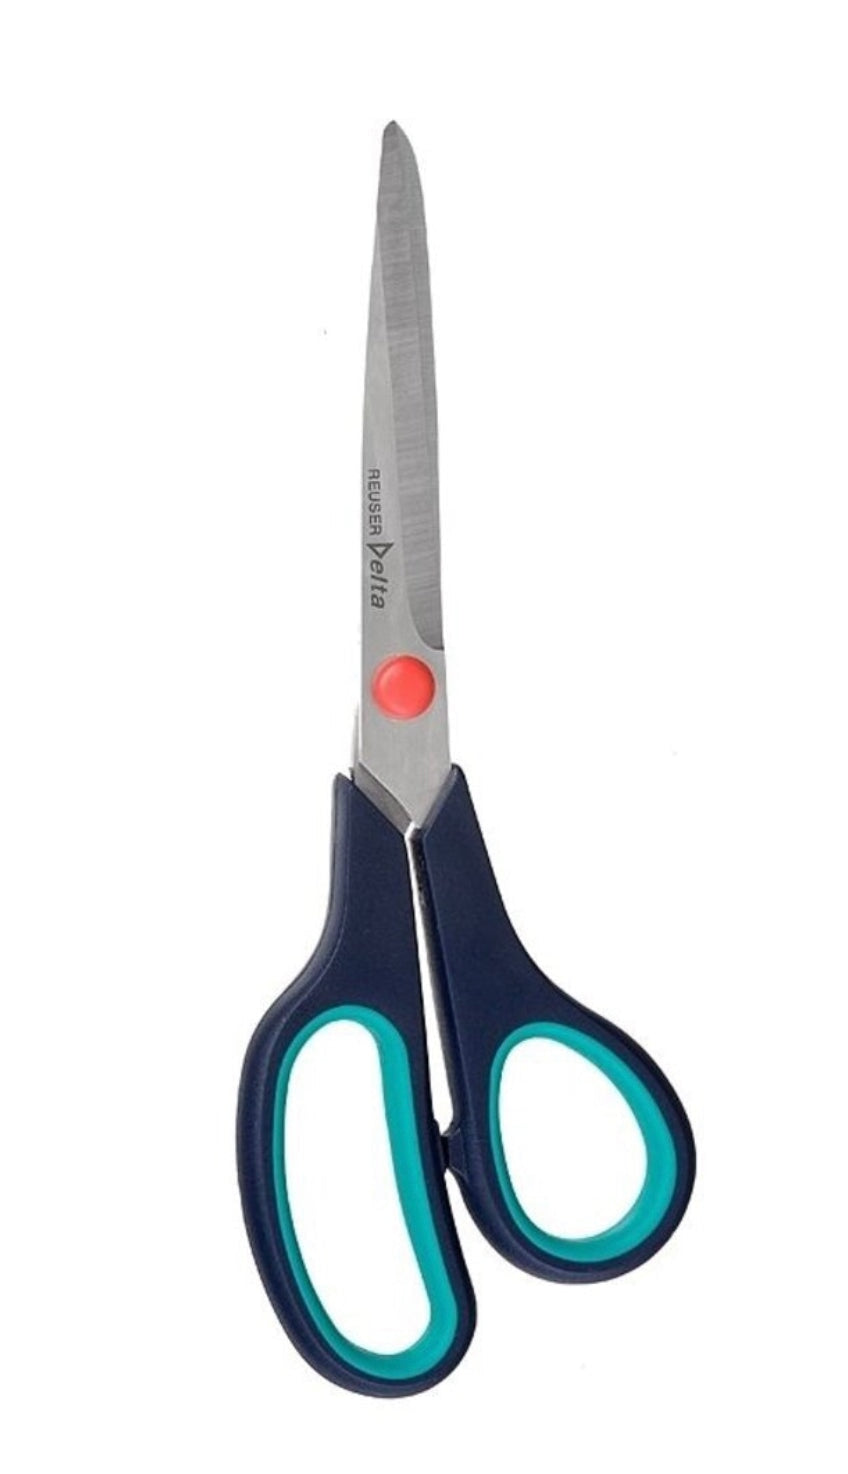 Reuser Delta 21cm Craft Scissors - Soft Grip #SC-421 Craft Scissors - Alder & Alouette